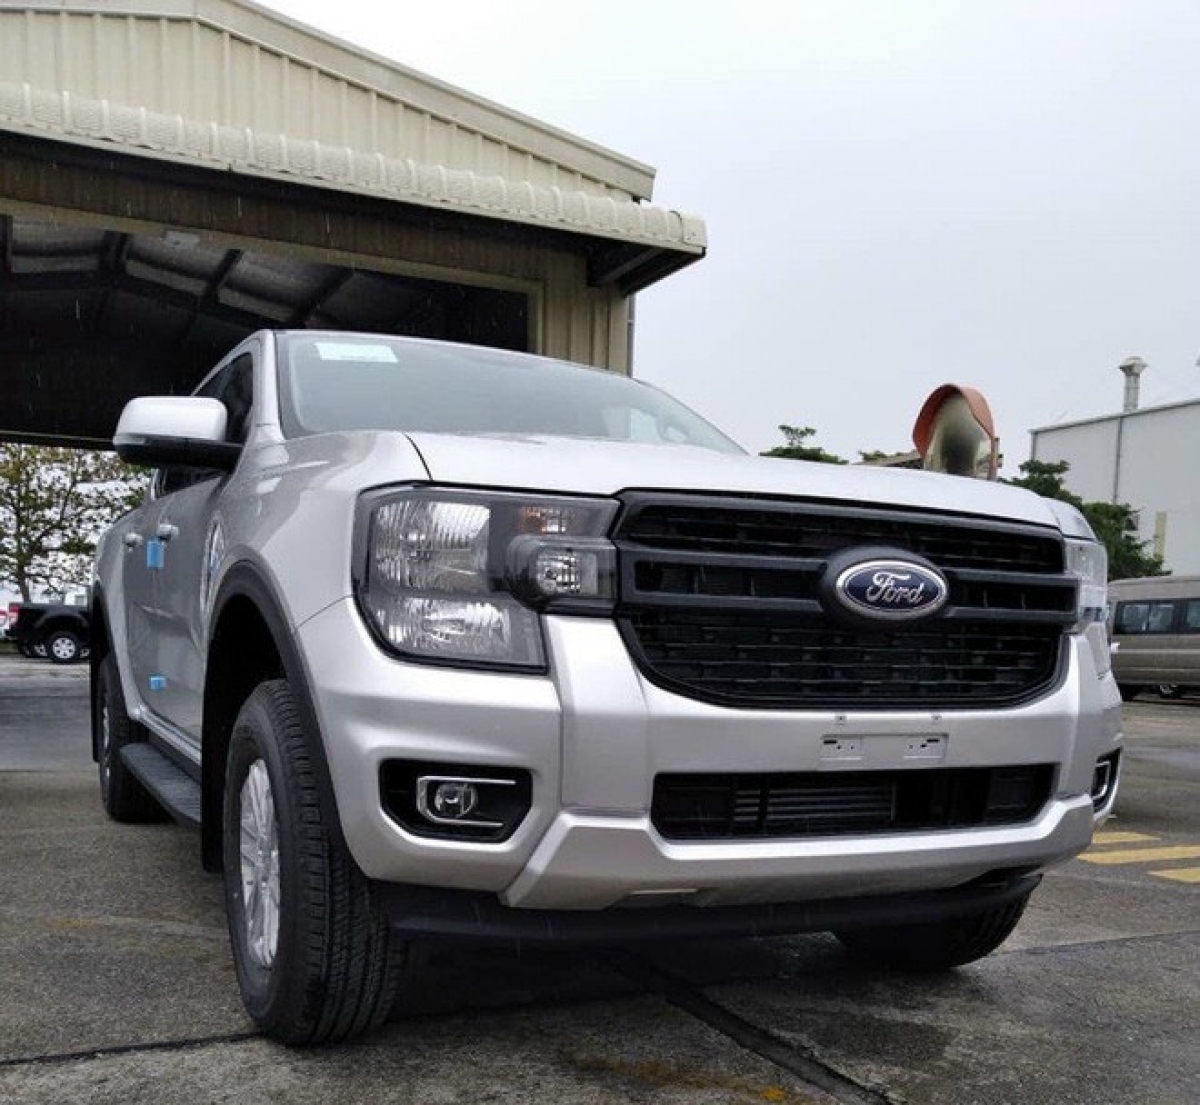 Ford Ranger bị chênh giá tại đại lý, cao nhất hơn 90 triệu đồng - Ảnh 4.